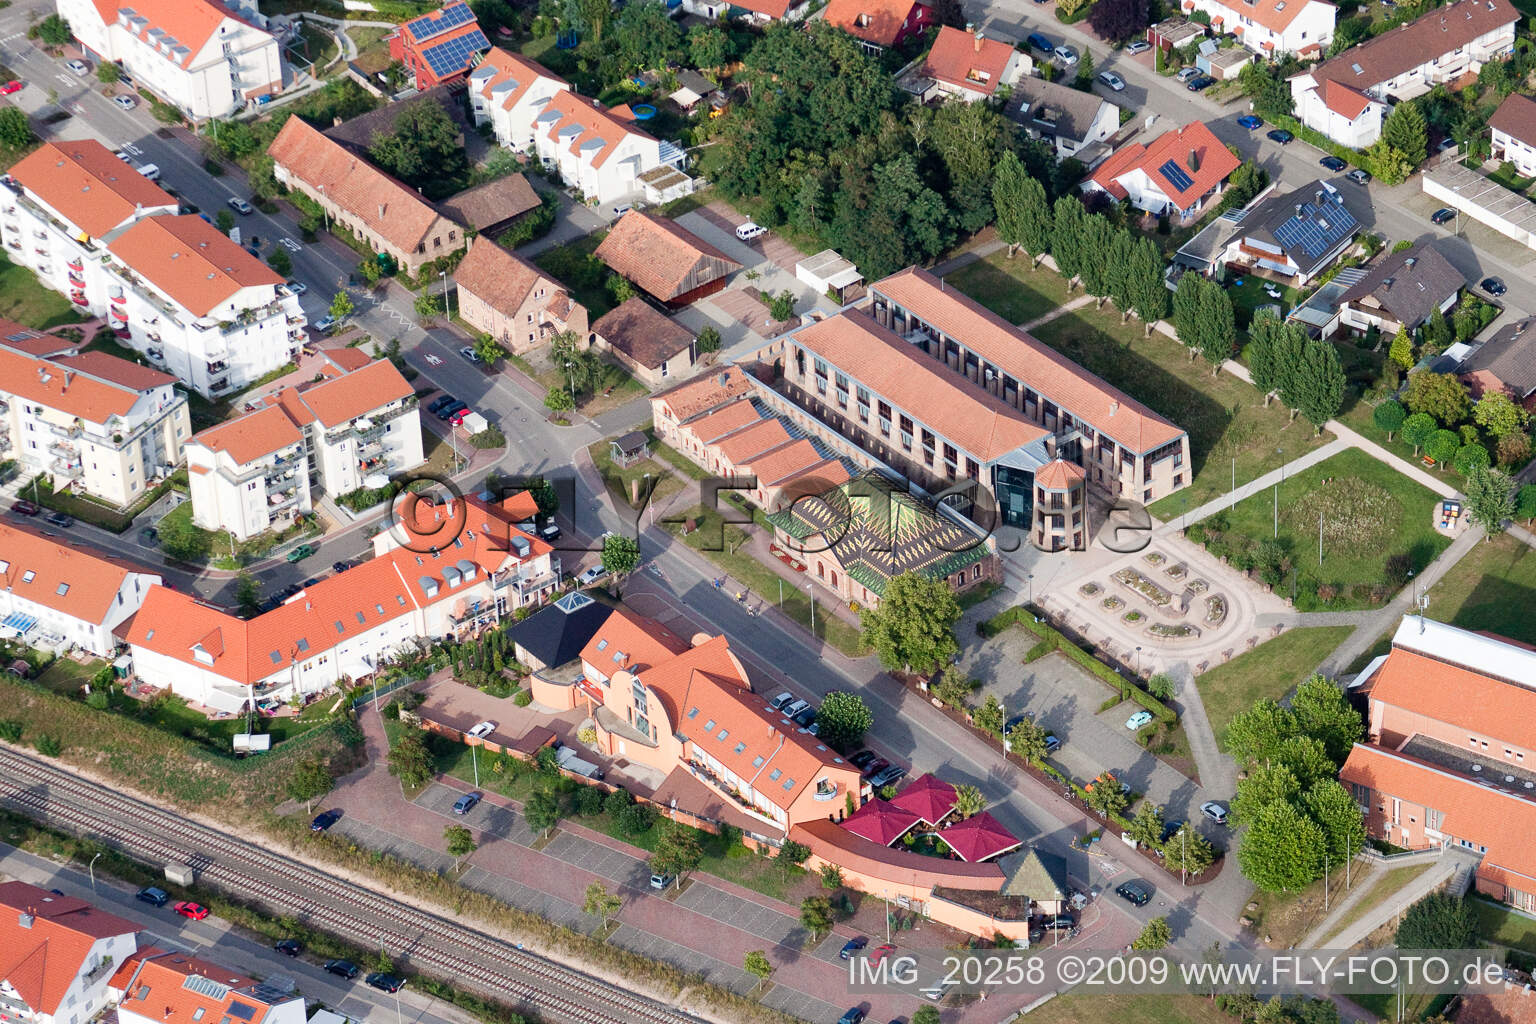 Vue aérienne de Musée de la briqueterie à Jockgrim dans le département Rhénanie-Palatinat, Allemagne